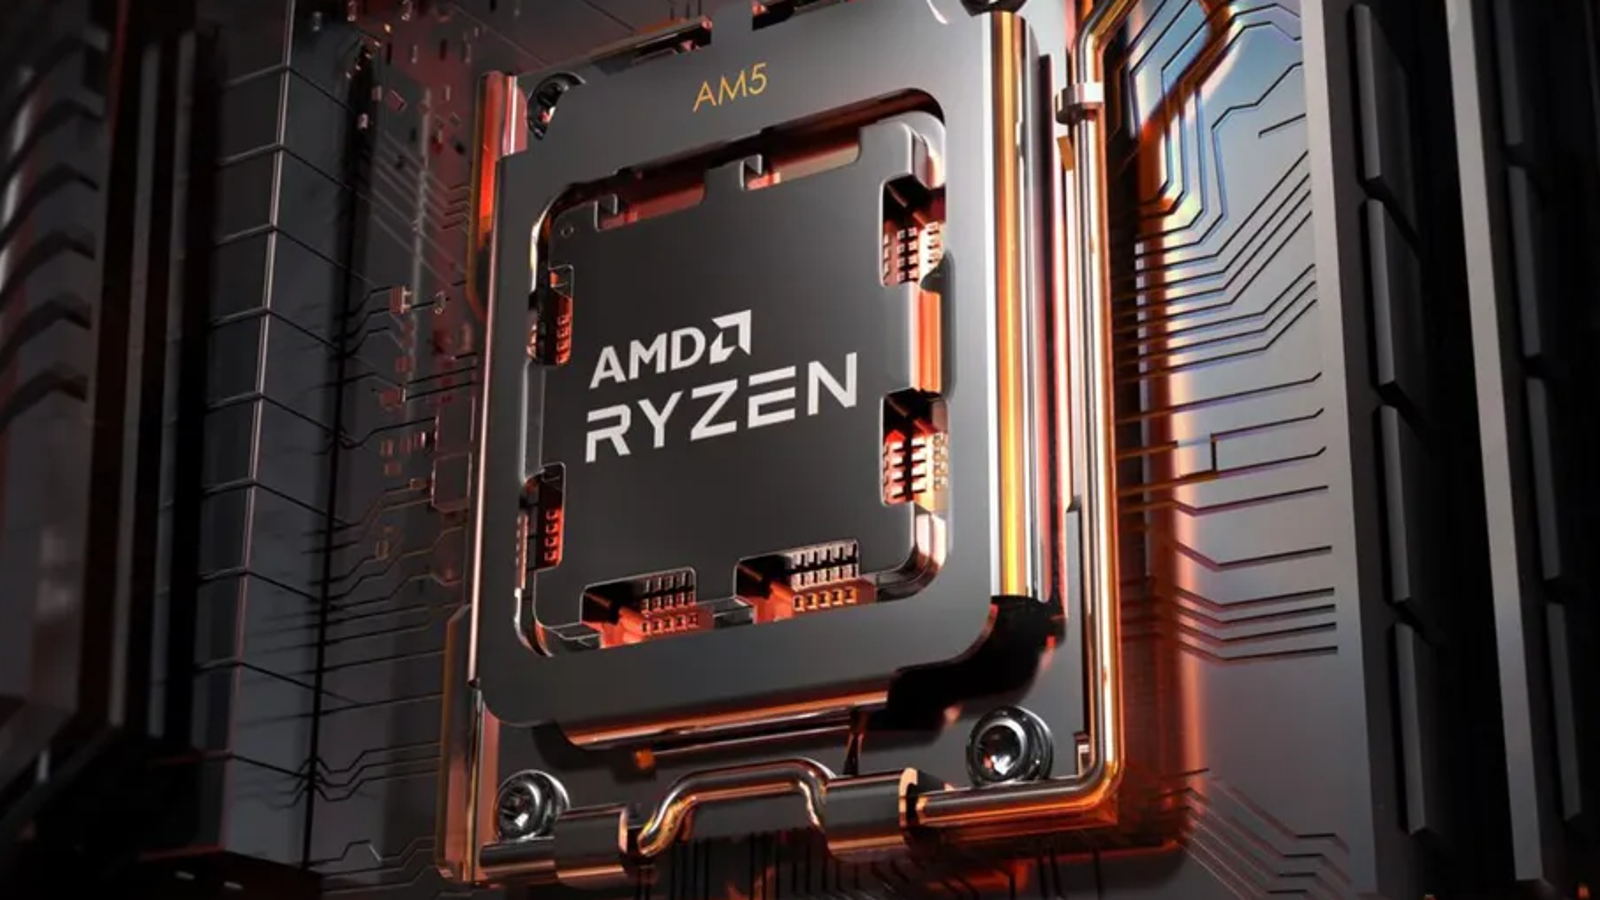 AMD Ryzen 7 7700X & Ryzen 5 7600X Are A Hit In Pre-Launch Reviews